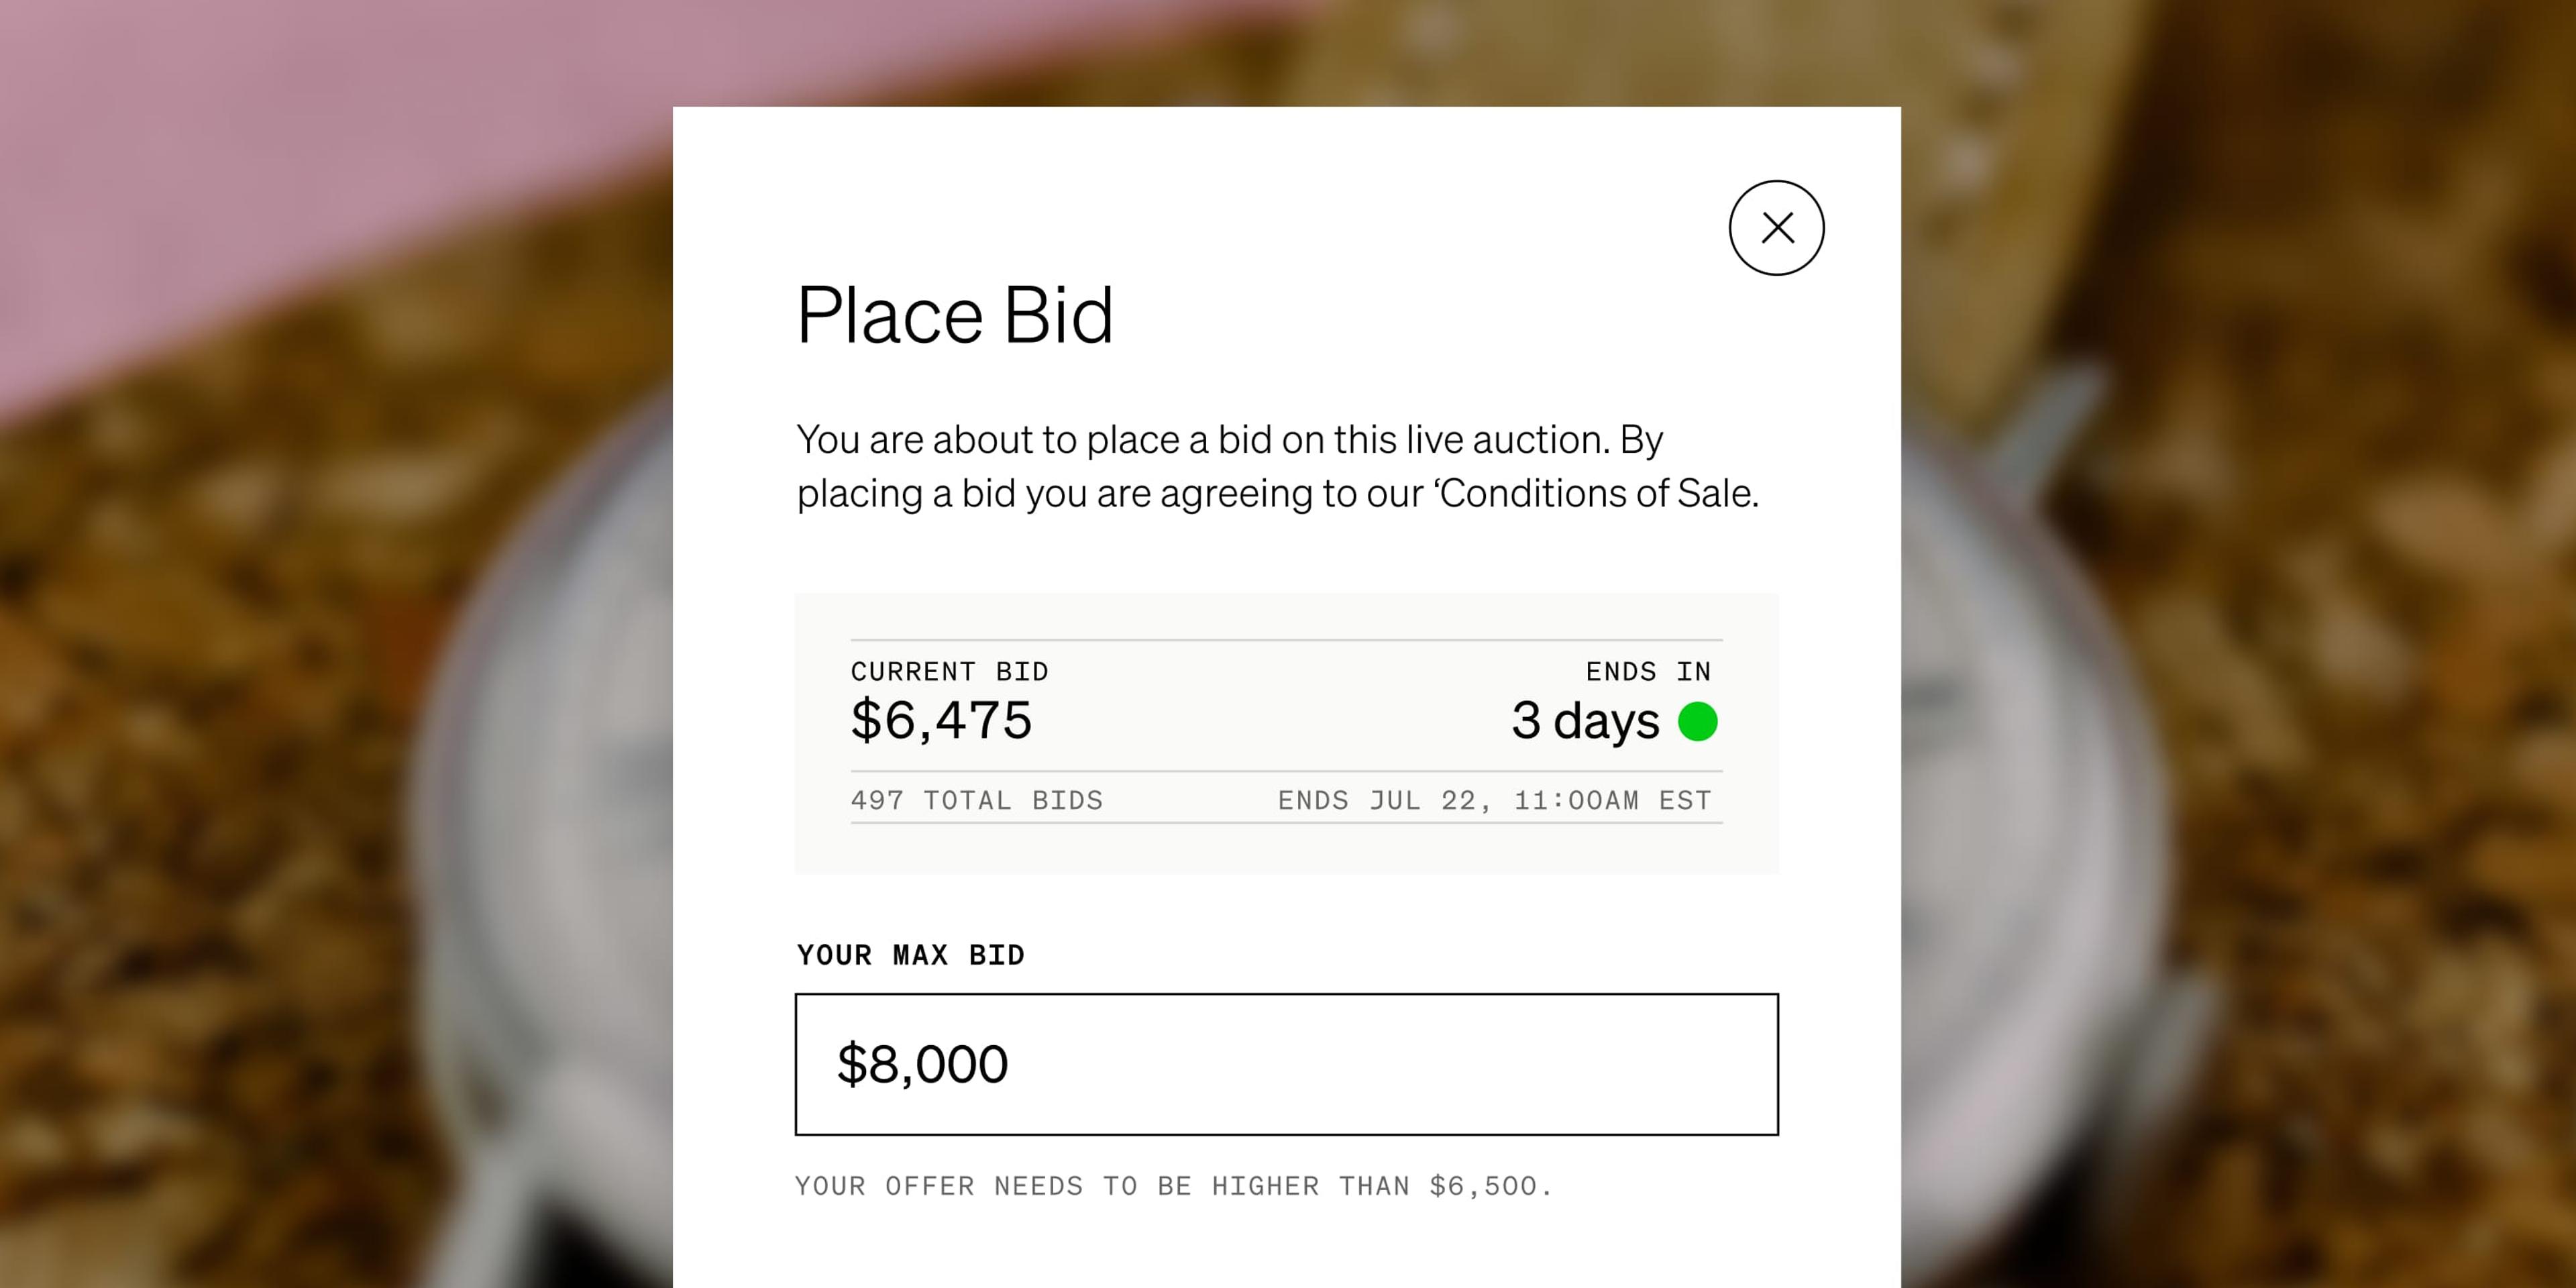 A user places a bid